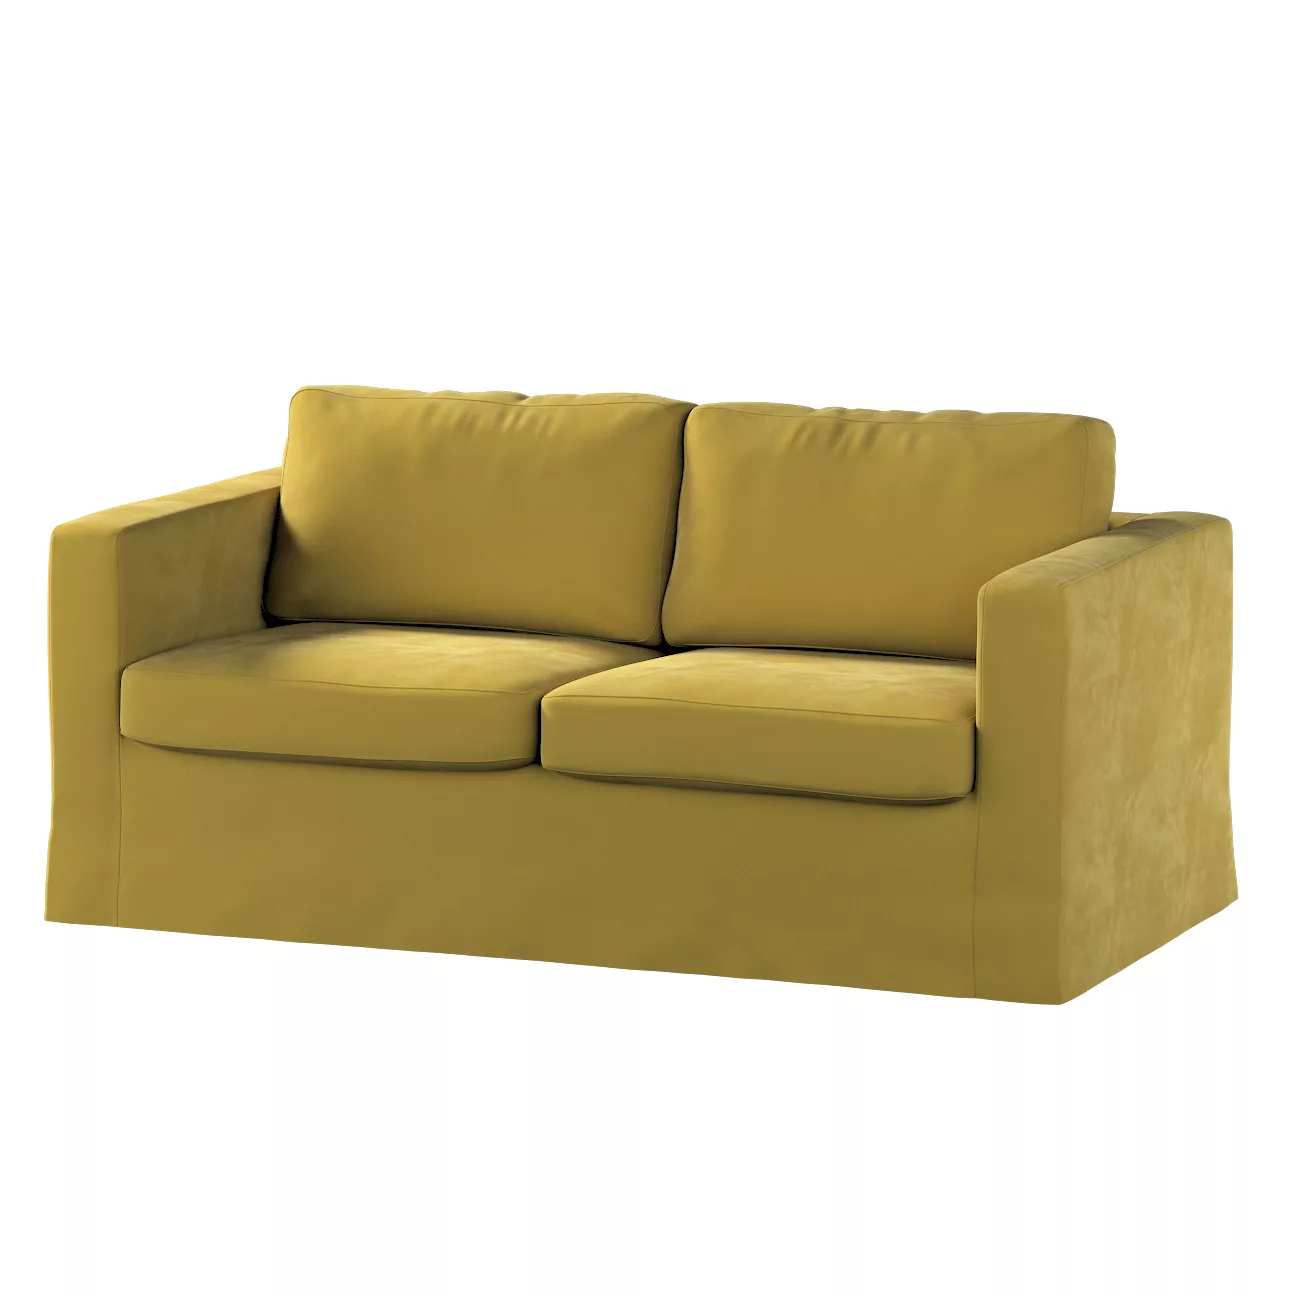 Bezug für Karlstad 2-Sitzer Sofa nicht ausklappbar, lang, olivegrün, Sofahu günstig online kaufen